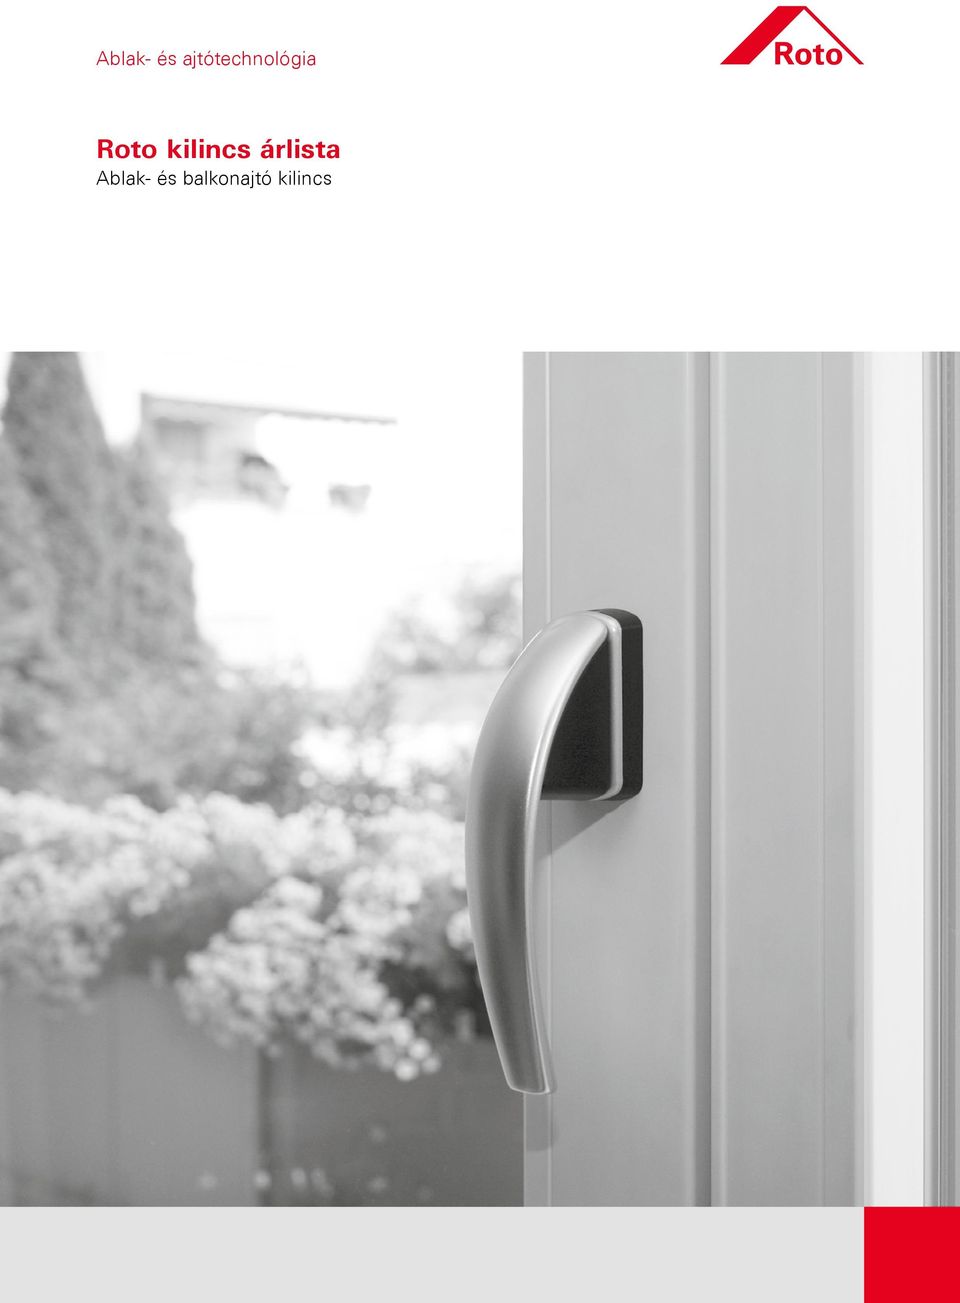 Ablak- és ajtótechnológia. Roto kilincs árlista. Ablak- és balkonajtó  kilincs - PDF Free Download